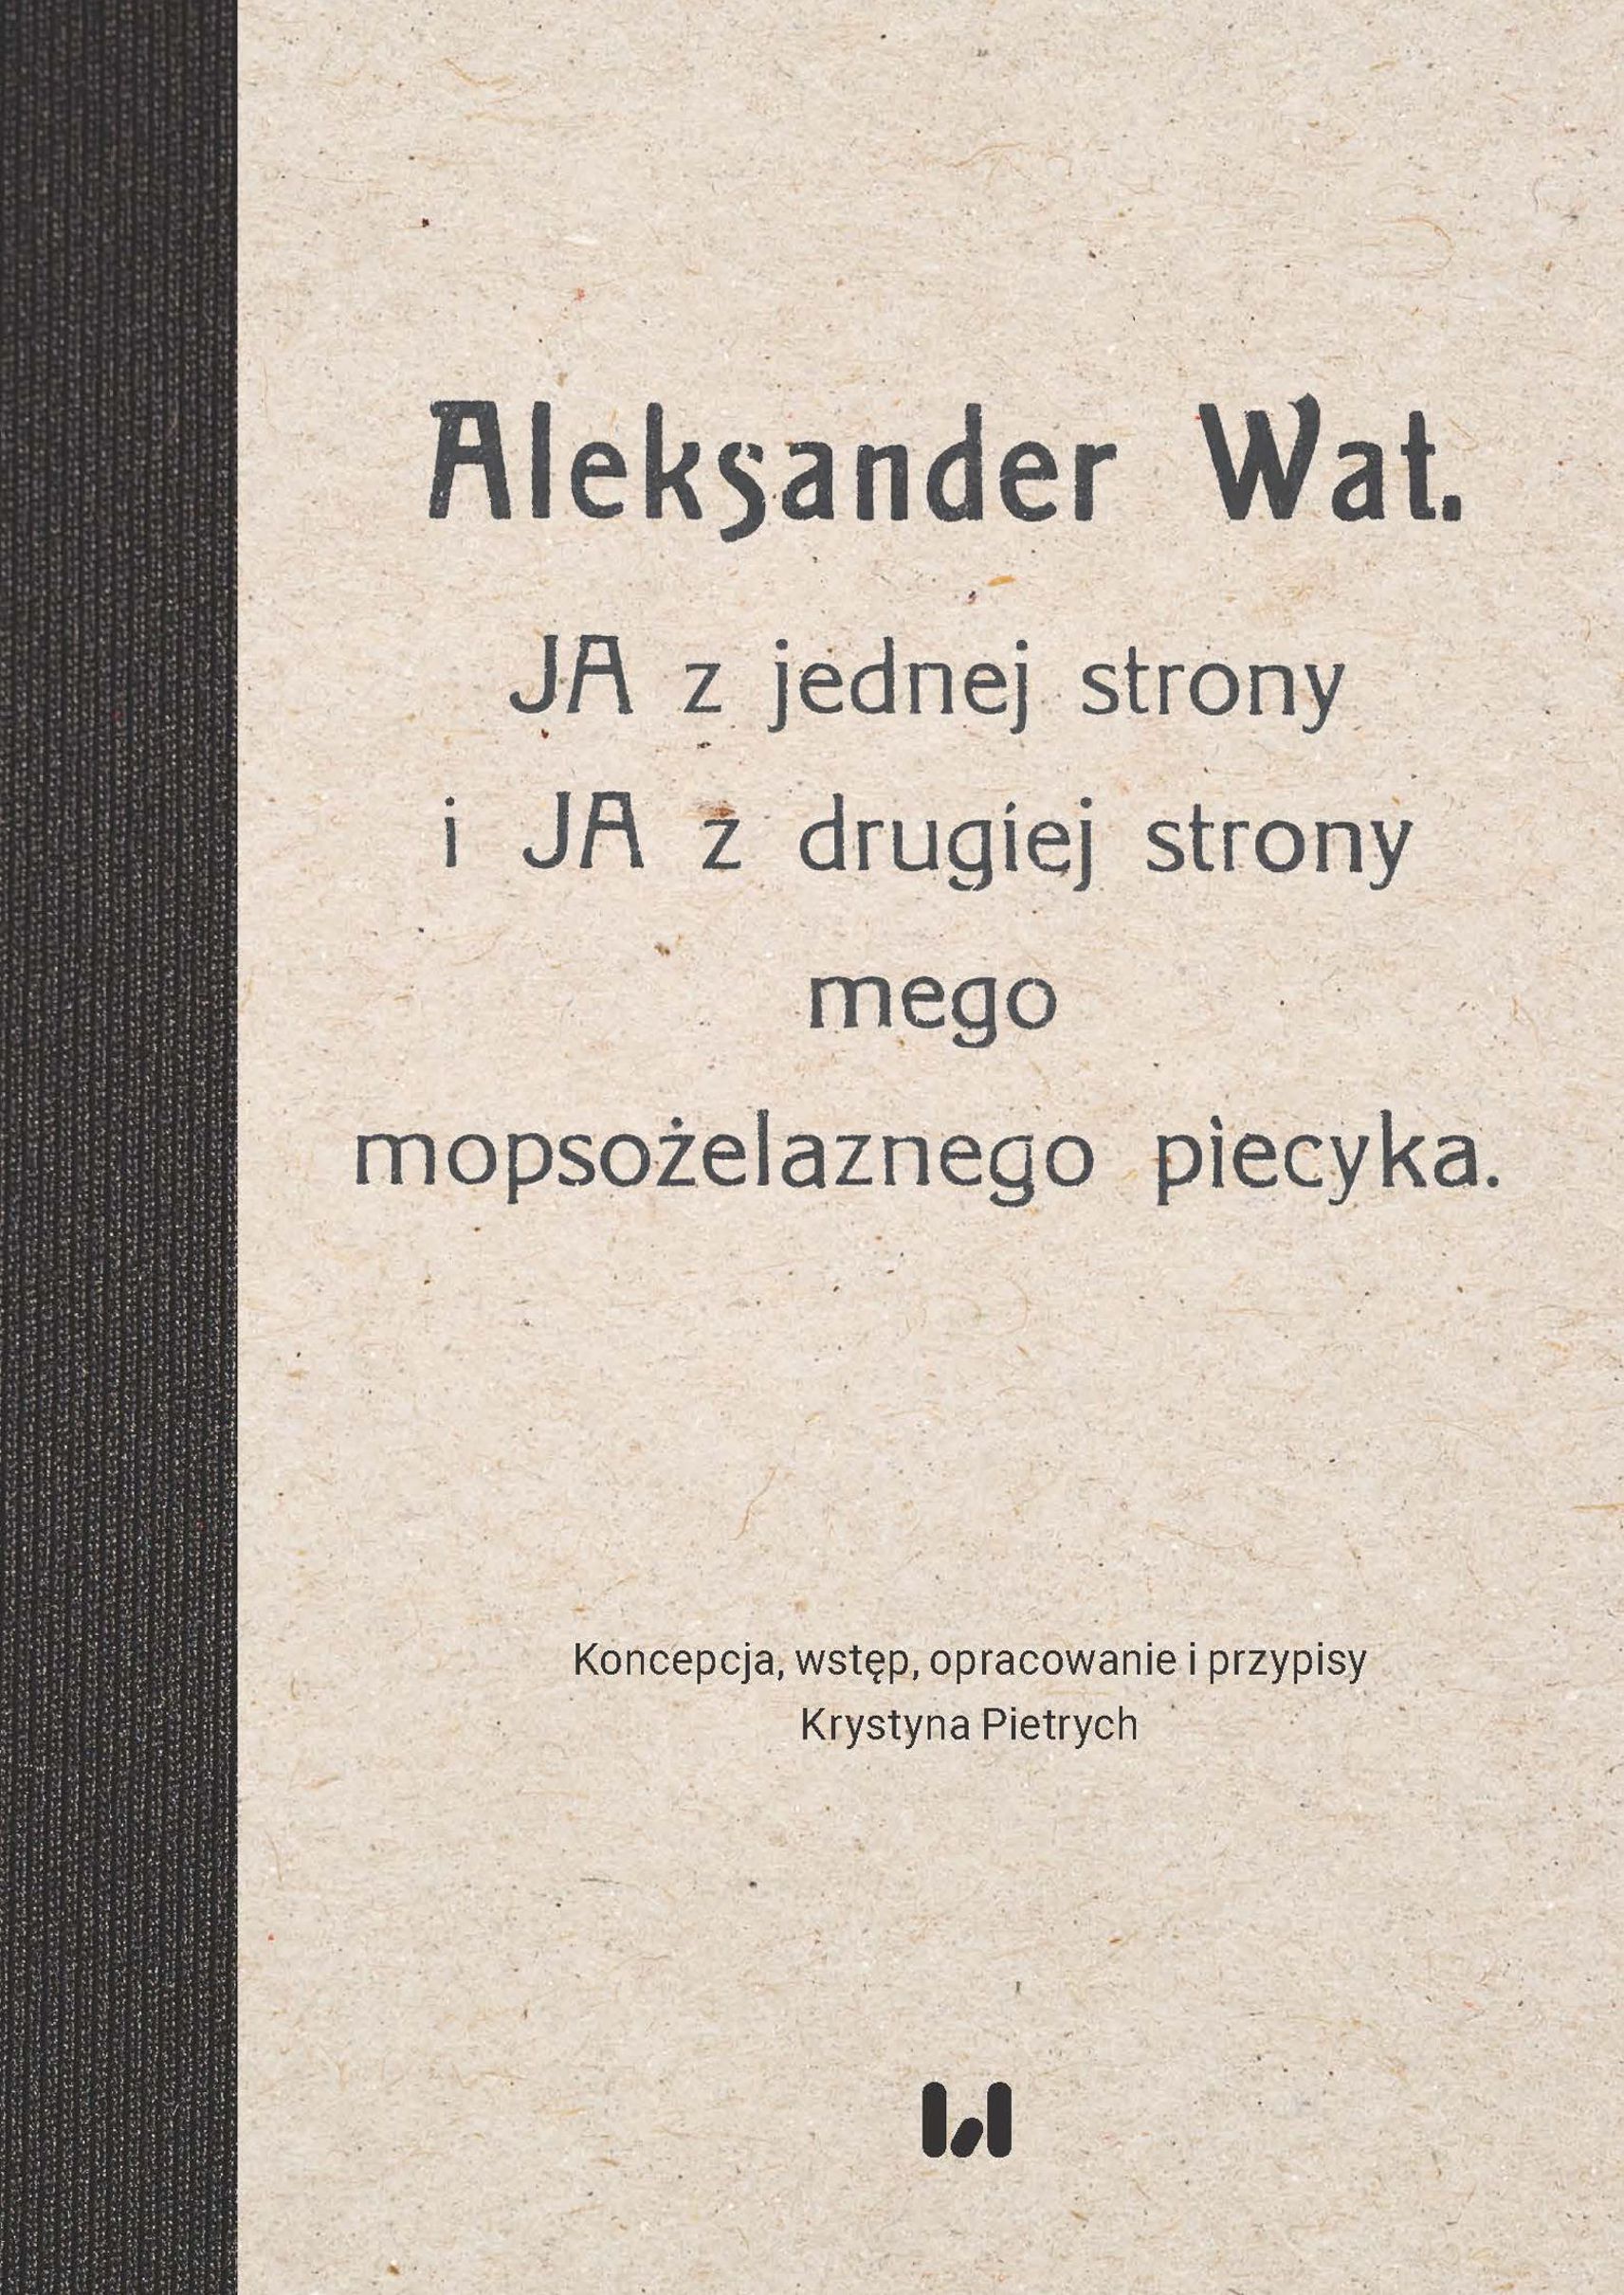 Aleksander Wat. Pug Iron Stove (JA z jednej strony i JA z drugiej strony mego mopsożelaznego piecyka) Cover Image